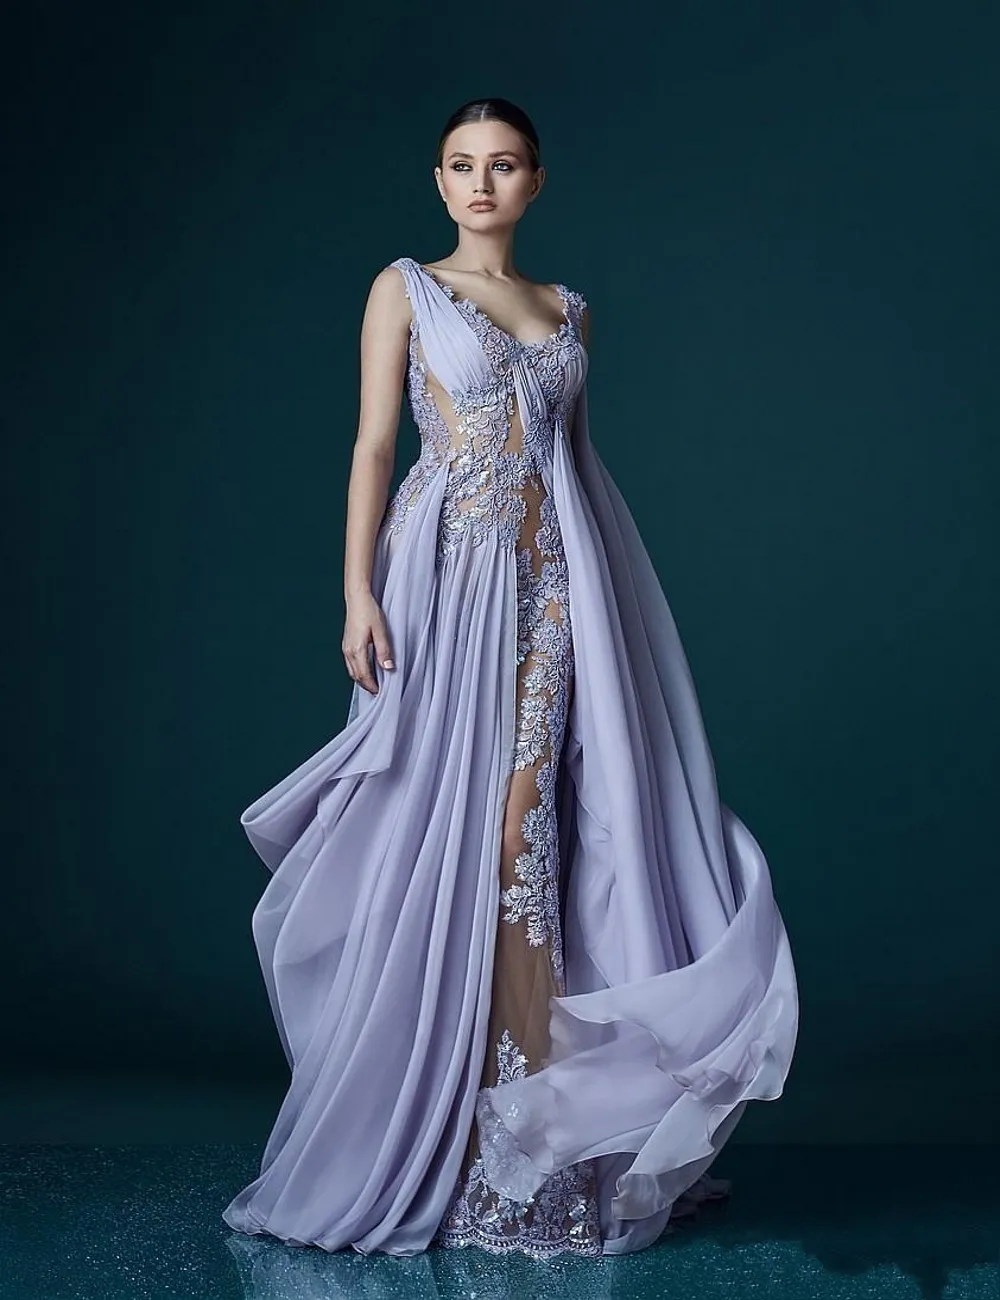 Lavendelfarbene Abendkleider mit tiefem V-Ausschnitt und Wickelapplikationen, durchscheinend, rückenfrei, Promi-Kleid, Abendkleider, atemberaubender langer Chiffon-Abschlussball D279e